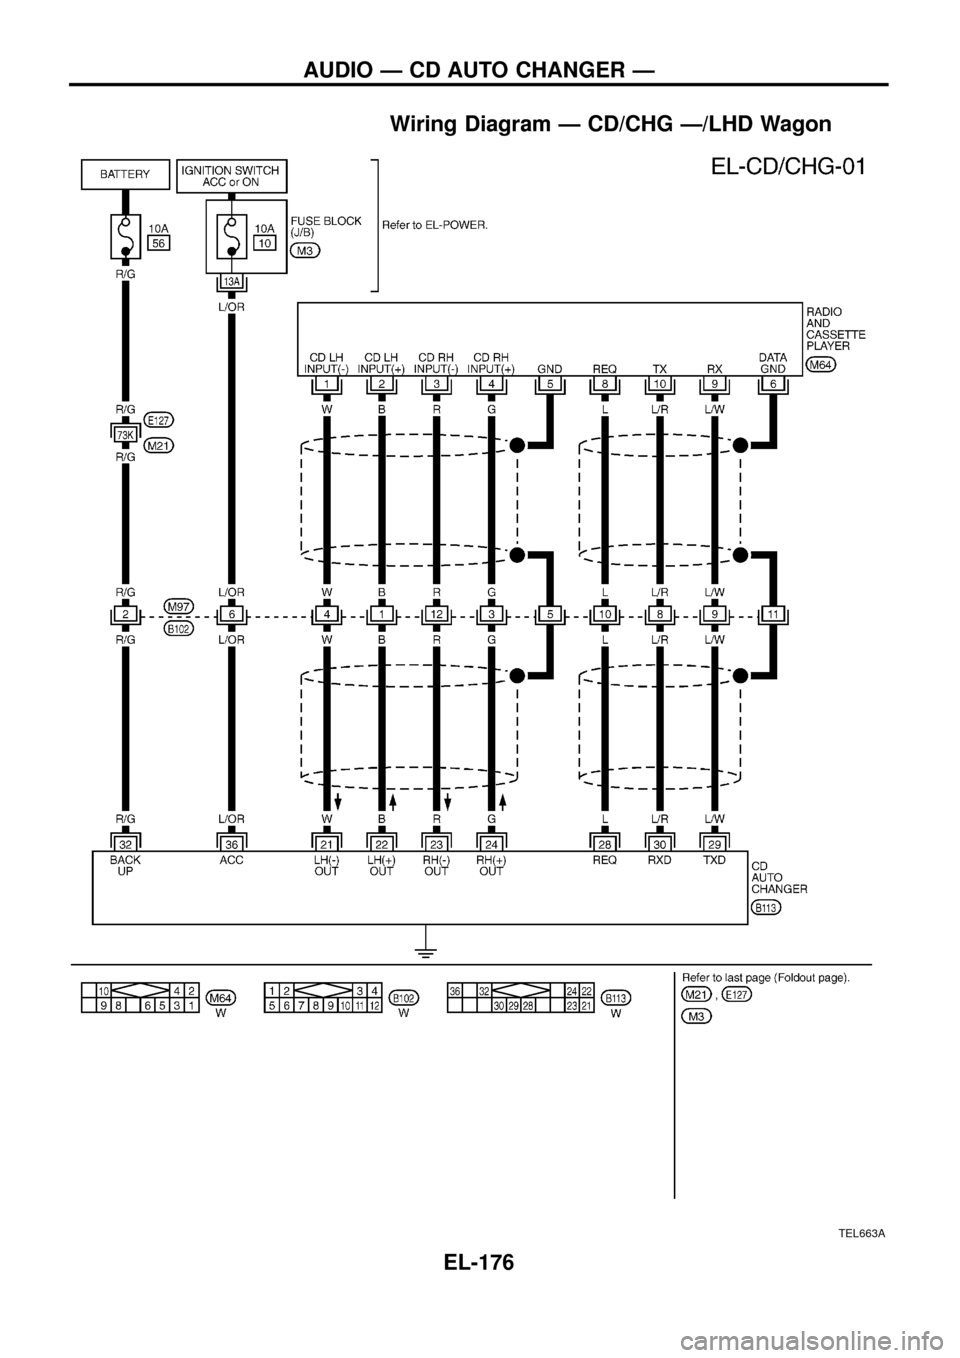 NISSAN PATROL 1998 Y61 / 5.G Electrical System Workshop Manual Wiring Diagram Ð CD/CHG Ð/LHD Wagon
TEL663A
AUDIO Ð CD AUTO CHANGER Ð
EL-176 